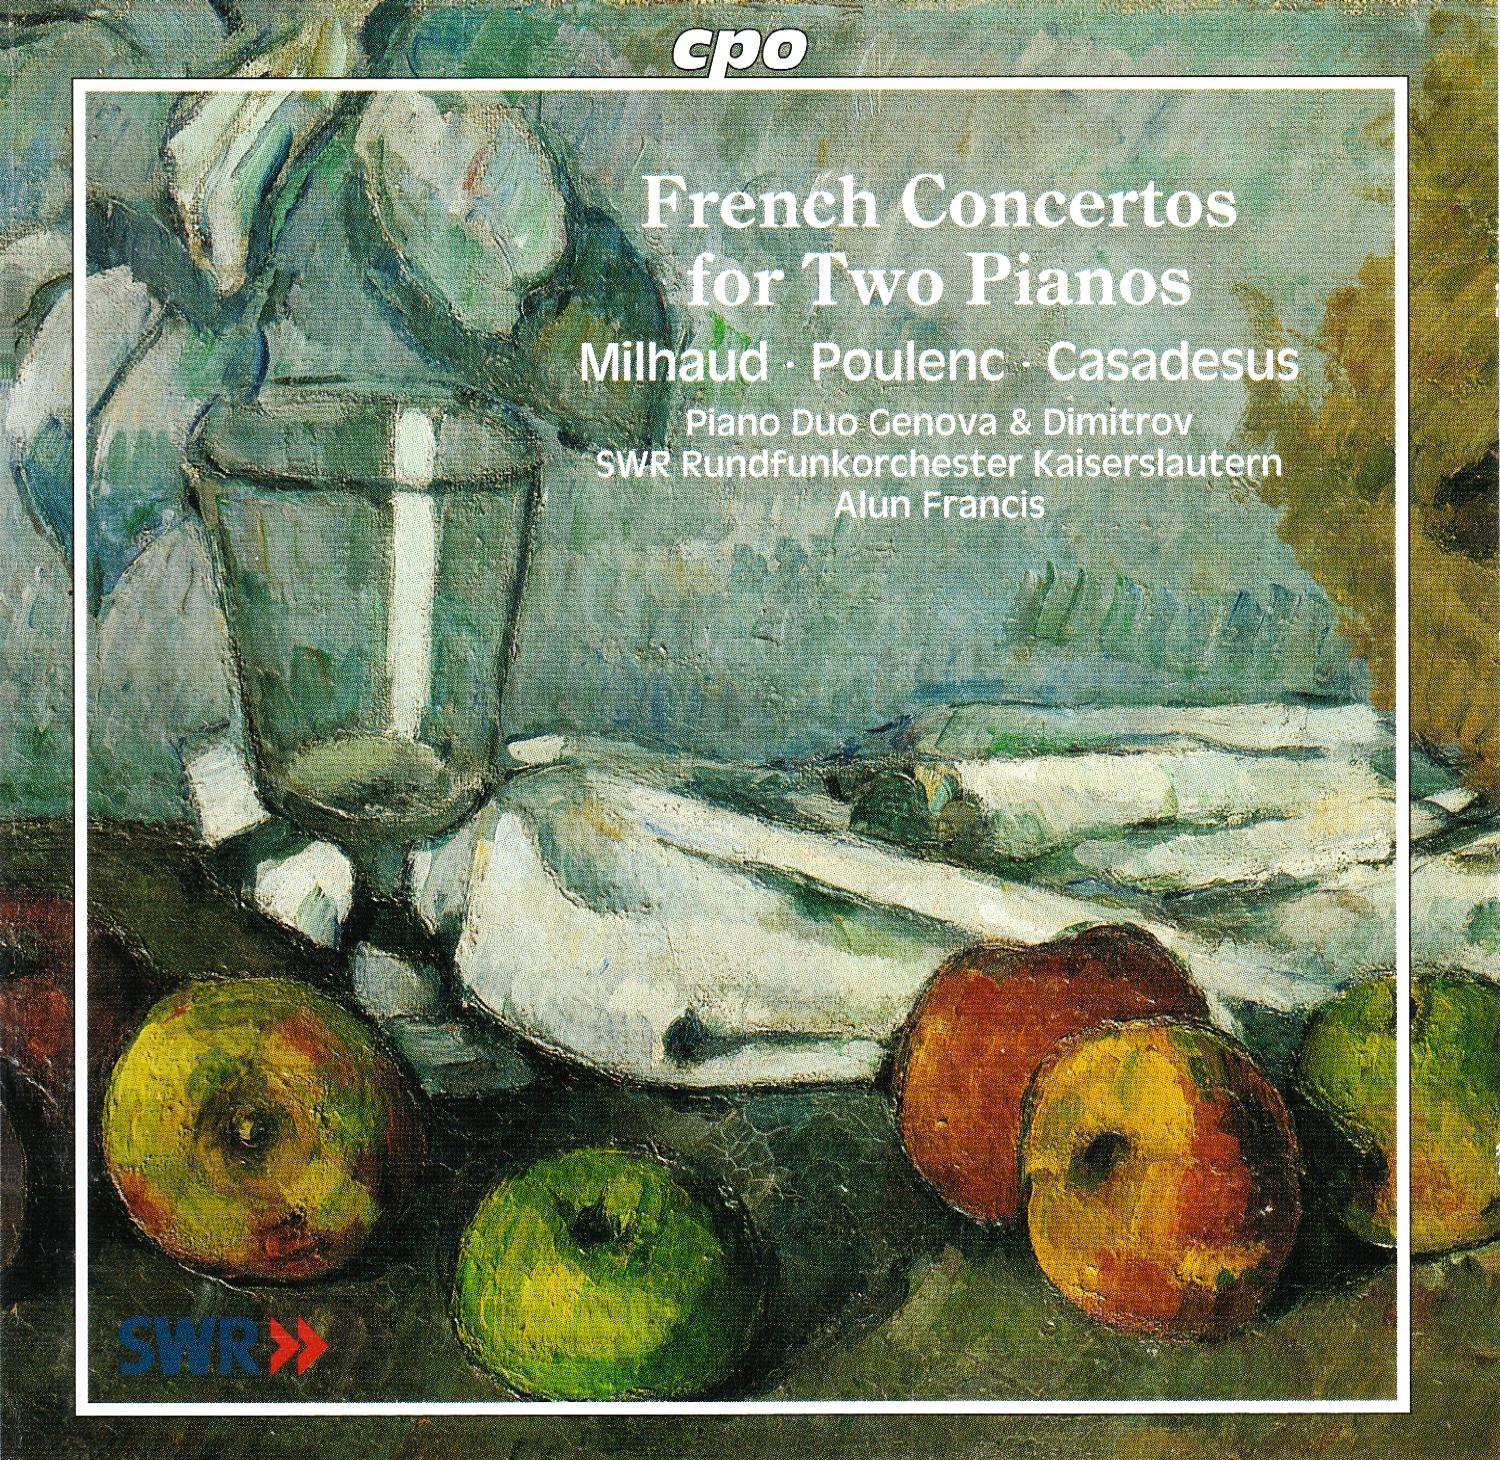 Französische Konzerte für zwei Klaviere • Milhaud, Poulenc, Casadesus (cpo 999 992-2) | Cover